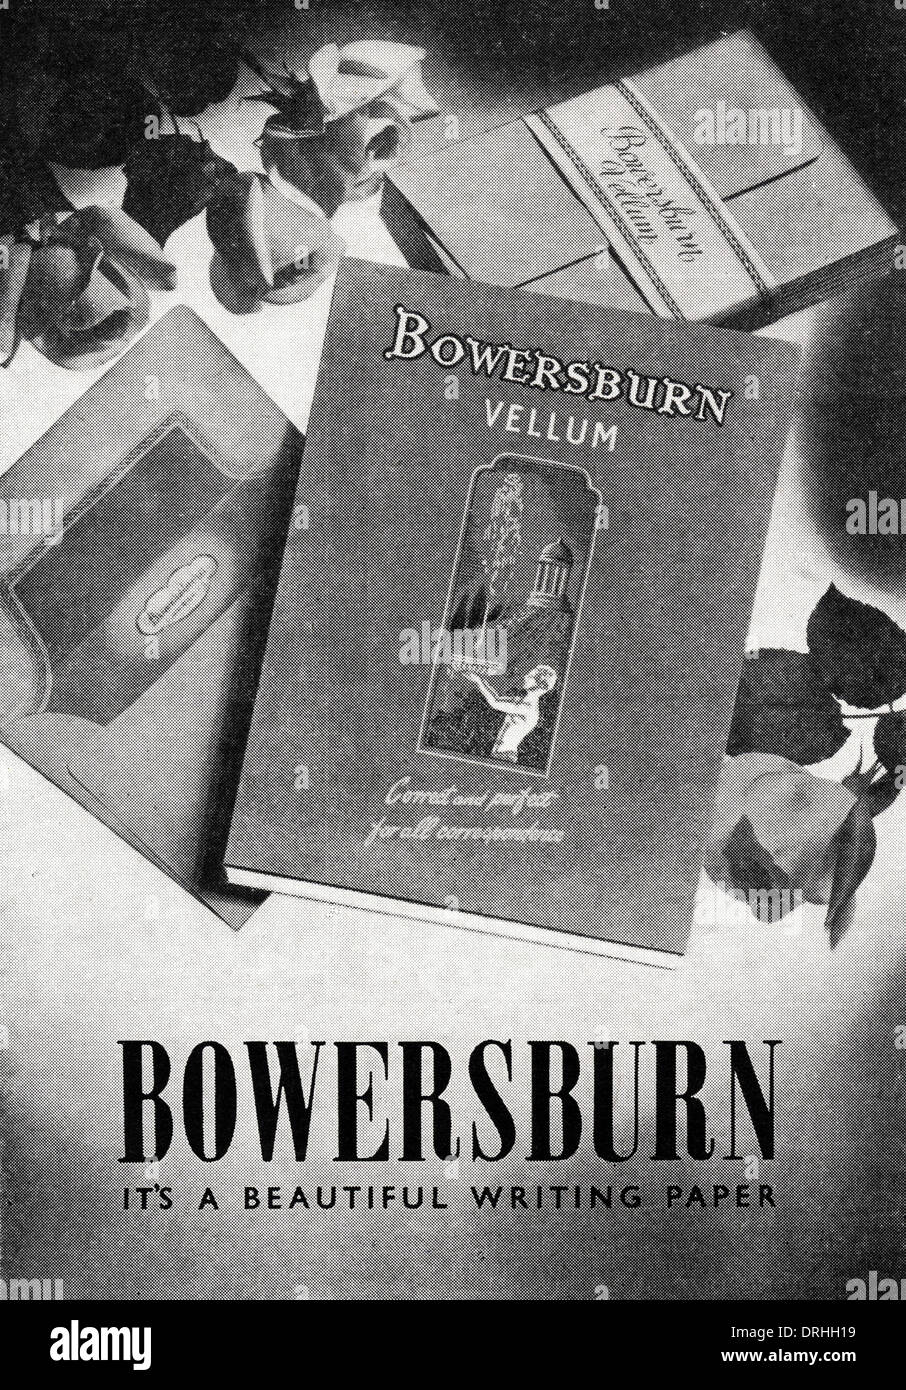 1950s magazine advertisement advertising BOWERSBURN VELLUM writing paper, advert circa 1952. Stock Photo